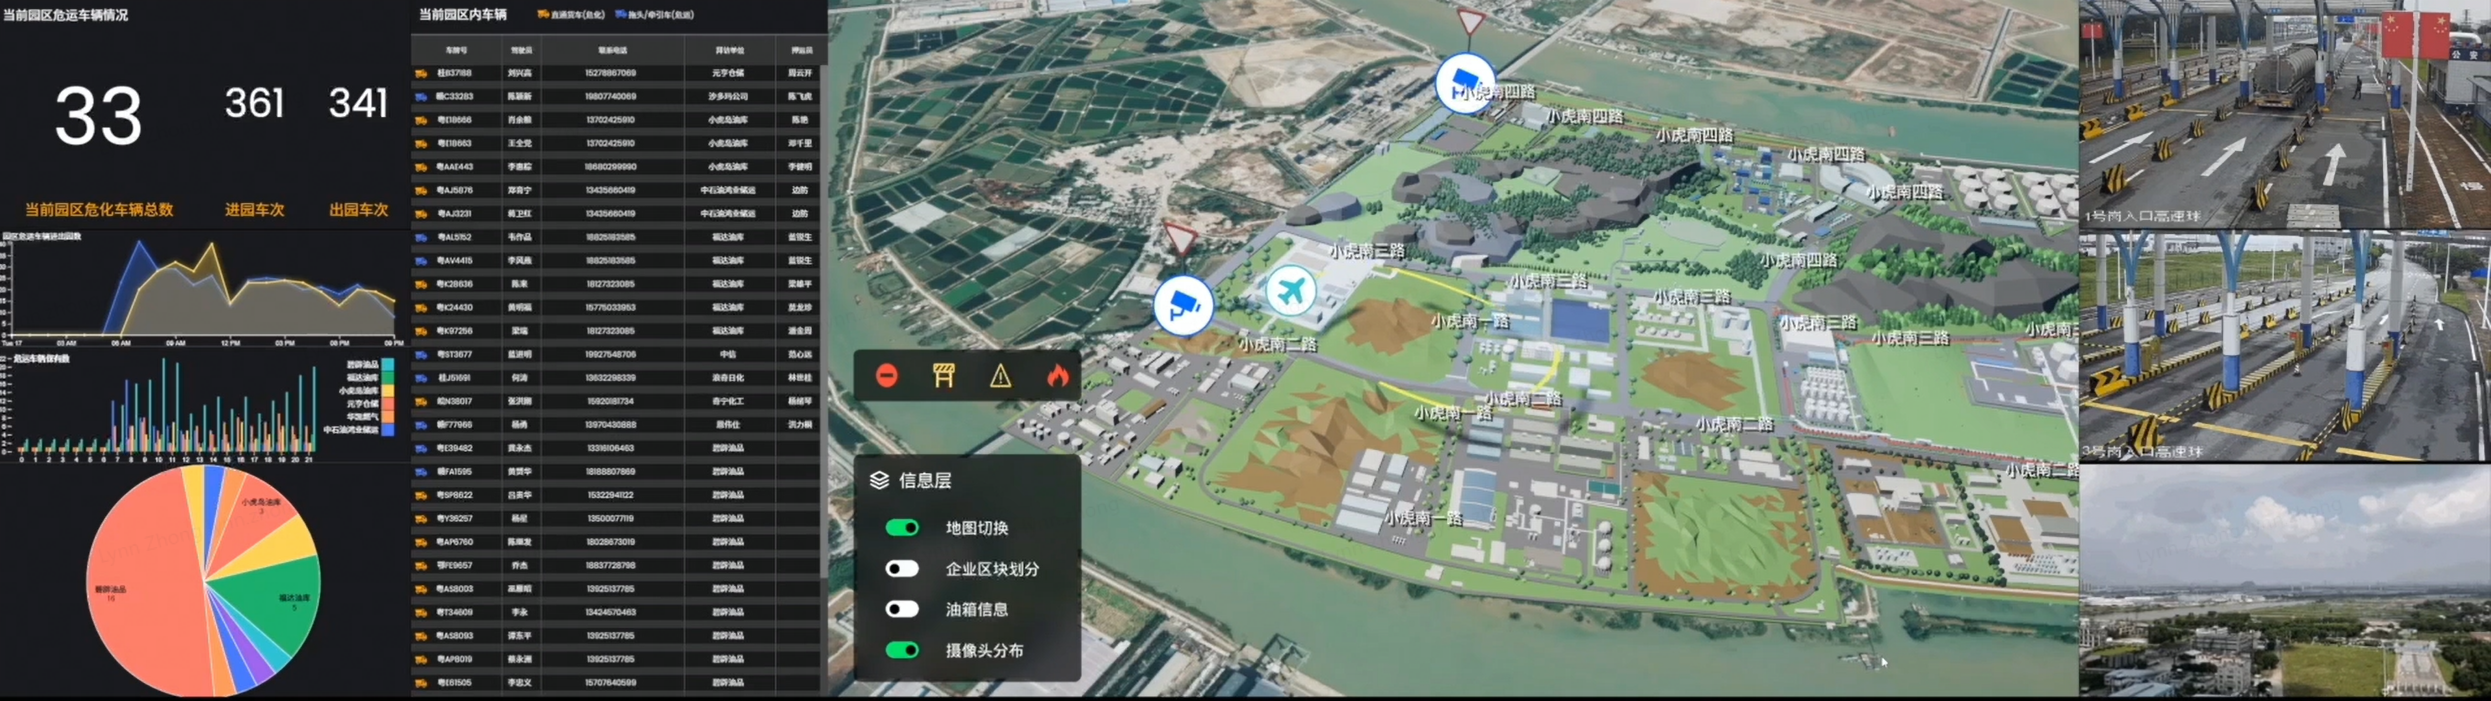 图为宸境科技通过空间智能技术在小虎岛工业园区的应用场景